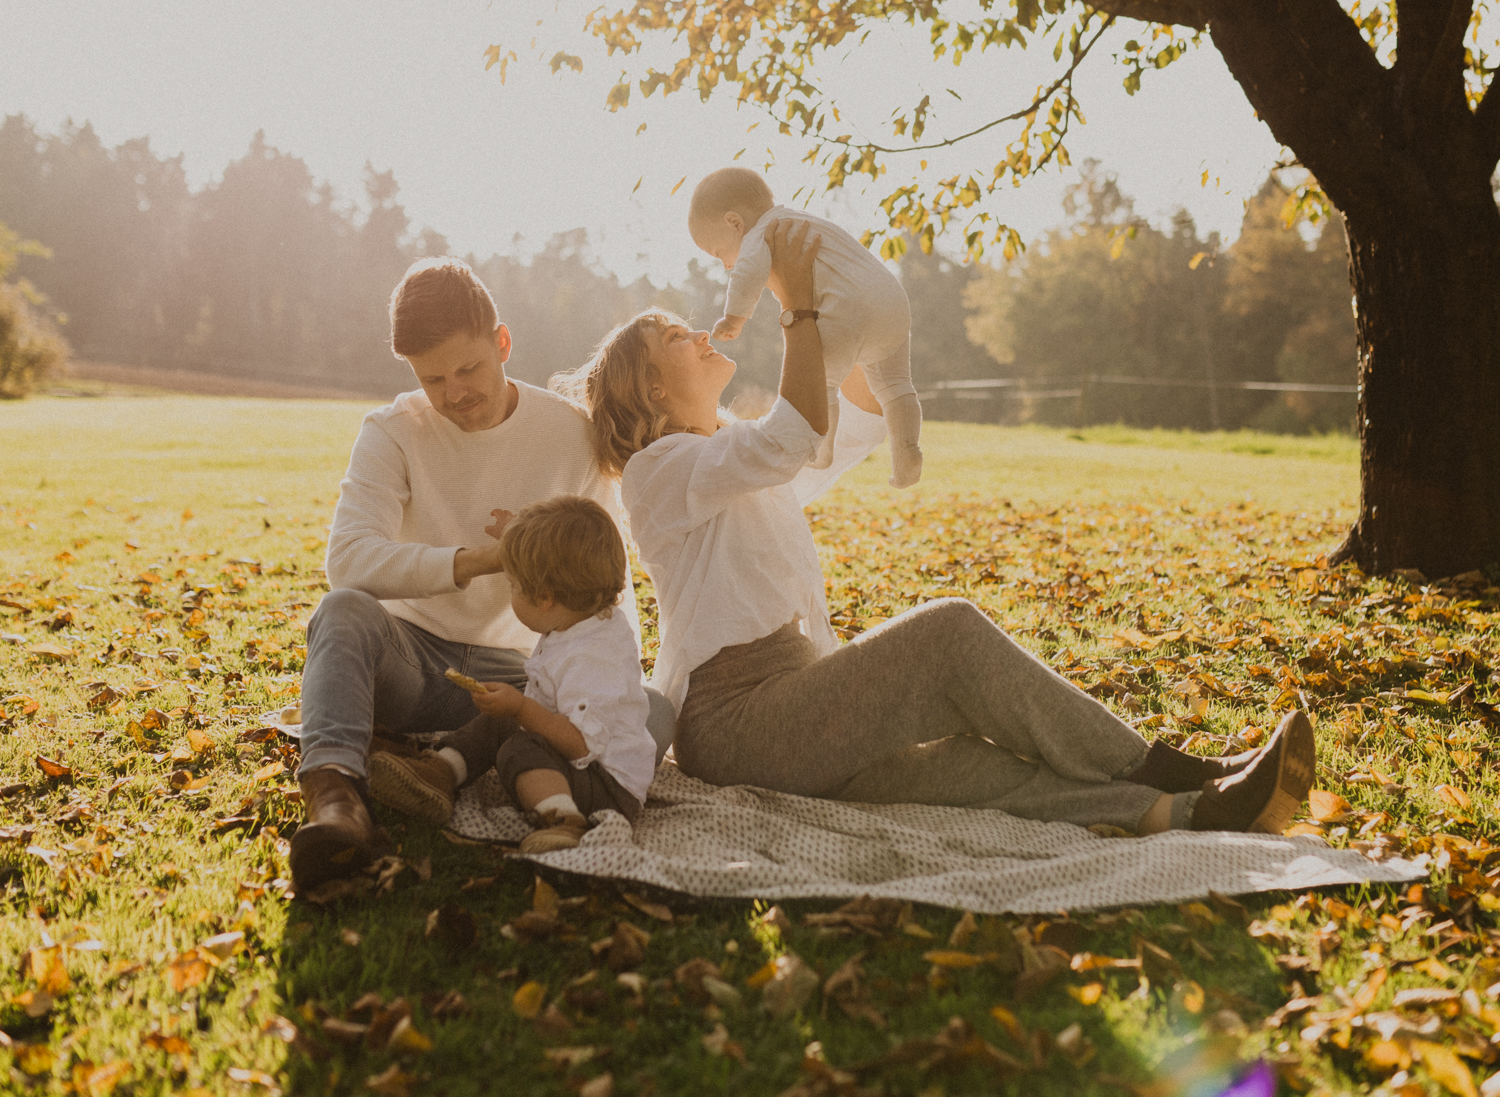 Familienfotoshooting auf der Picknick Decke in der Natur